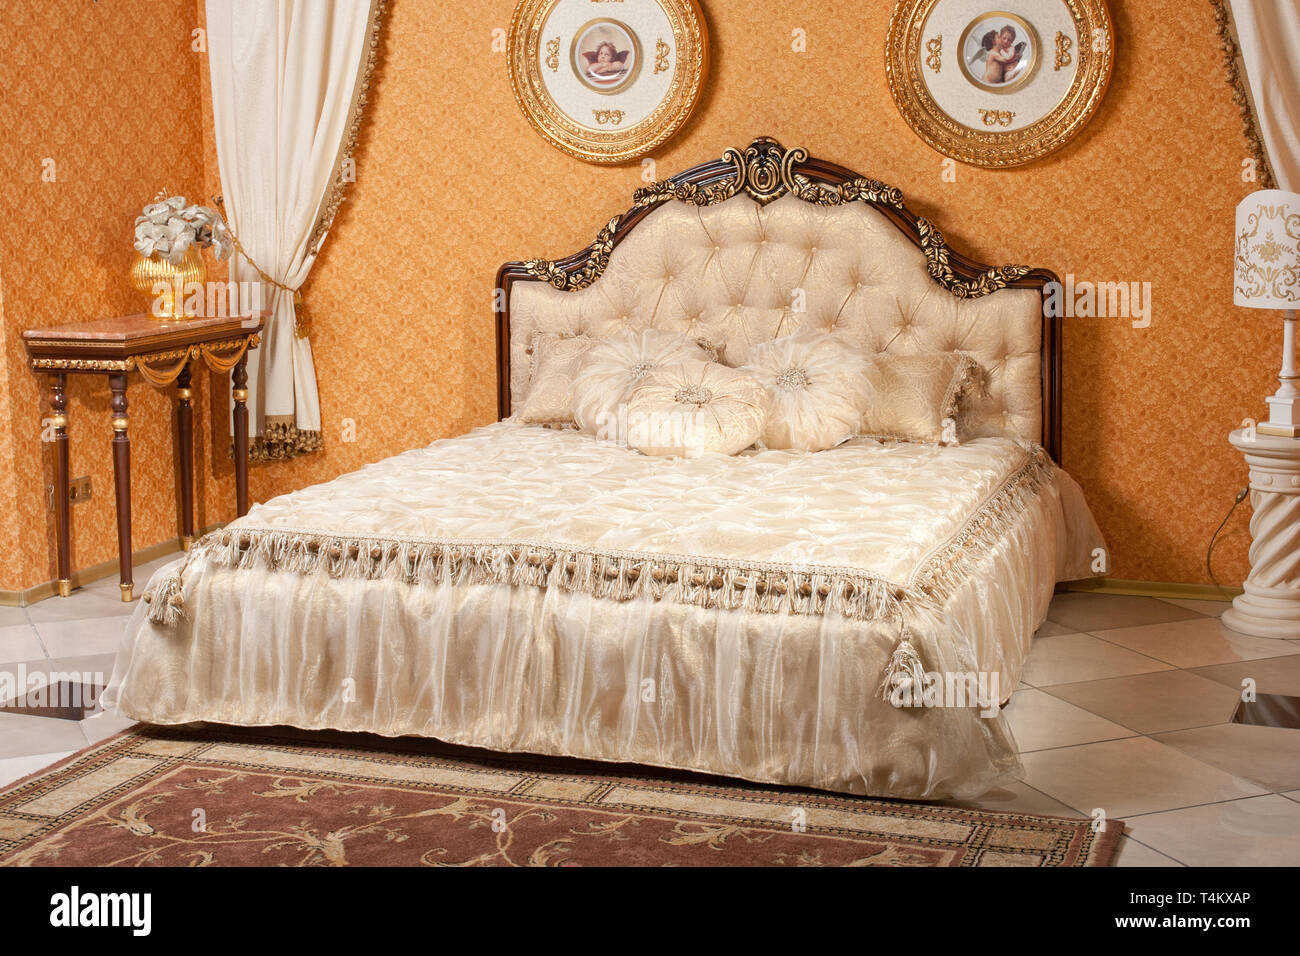 Leere Innenbereich Schlafzimmer Hintergrund in warmen Farben gehalten und mit klassischen und luxuriösen Möbeln eingerichtet Stockfoto